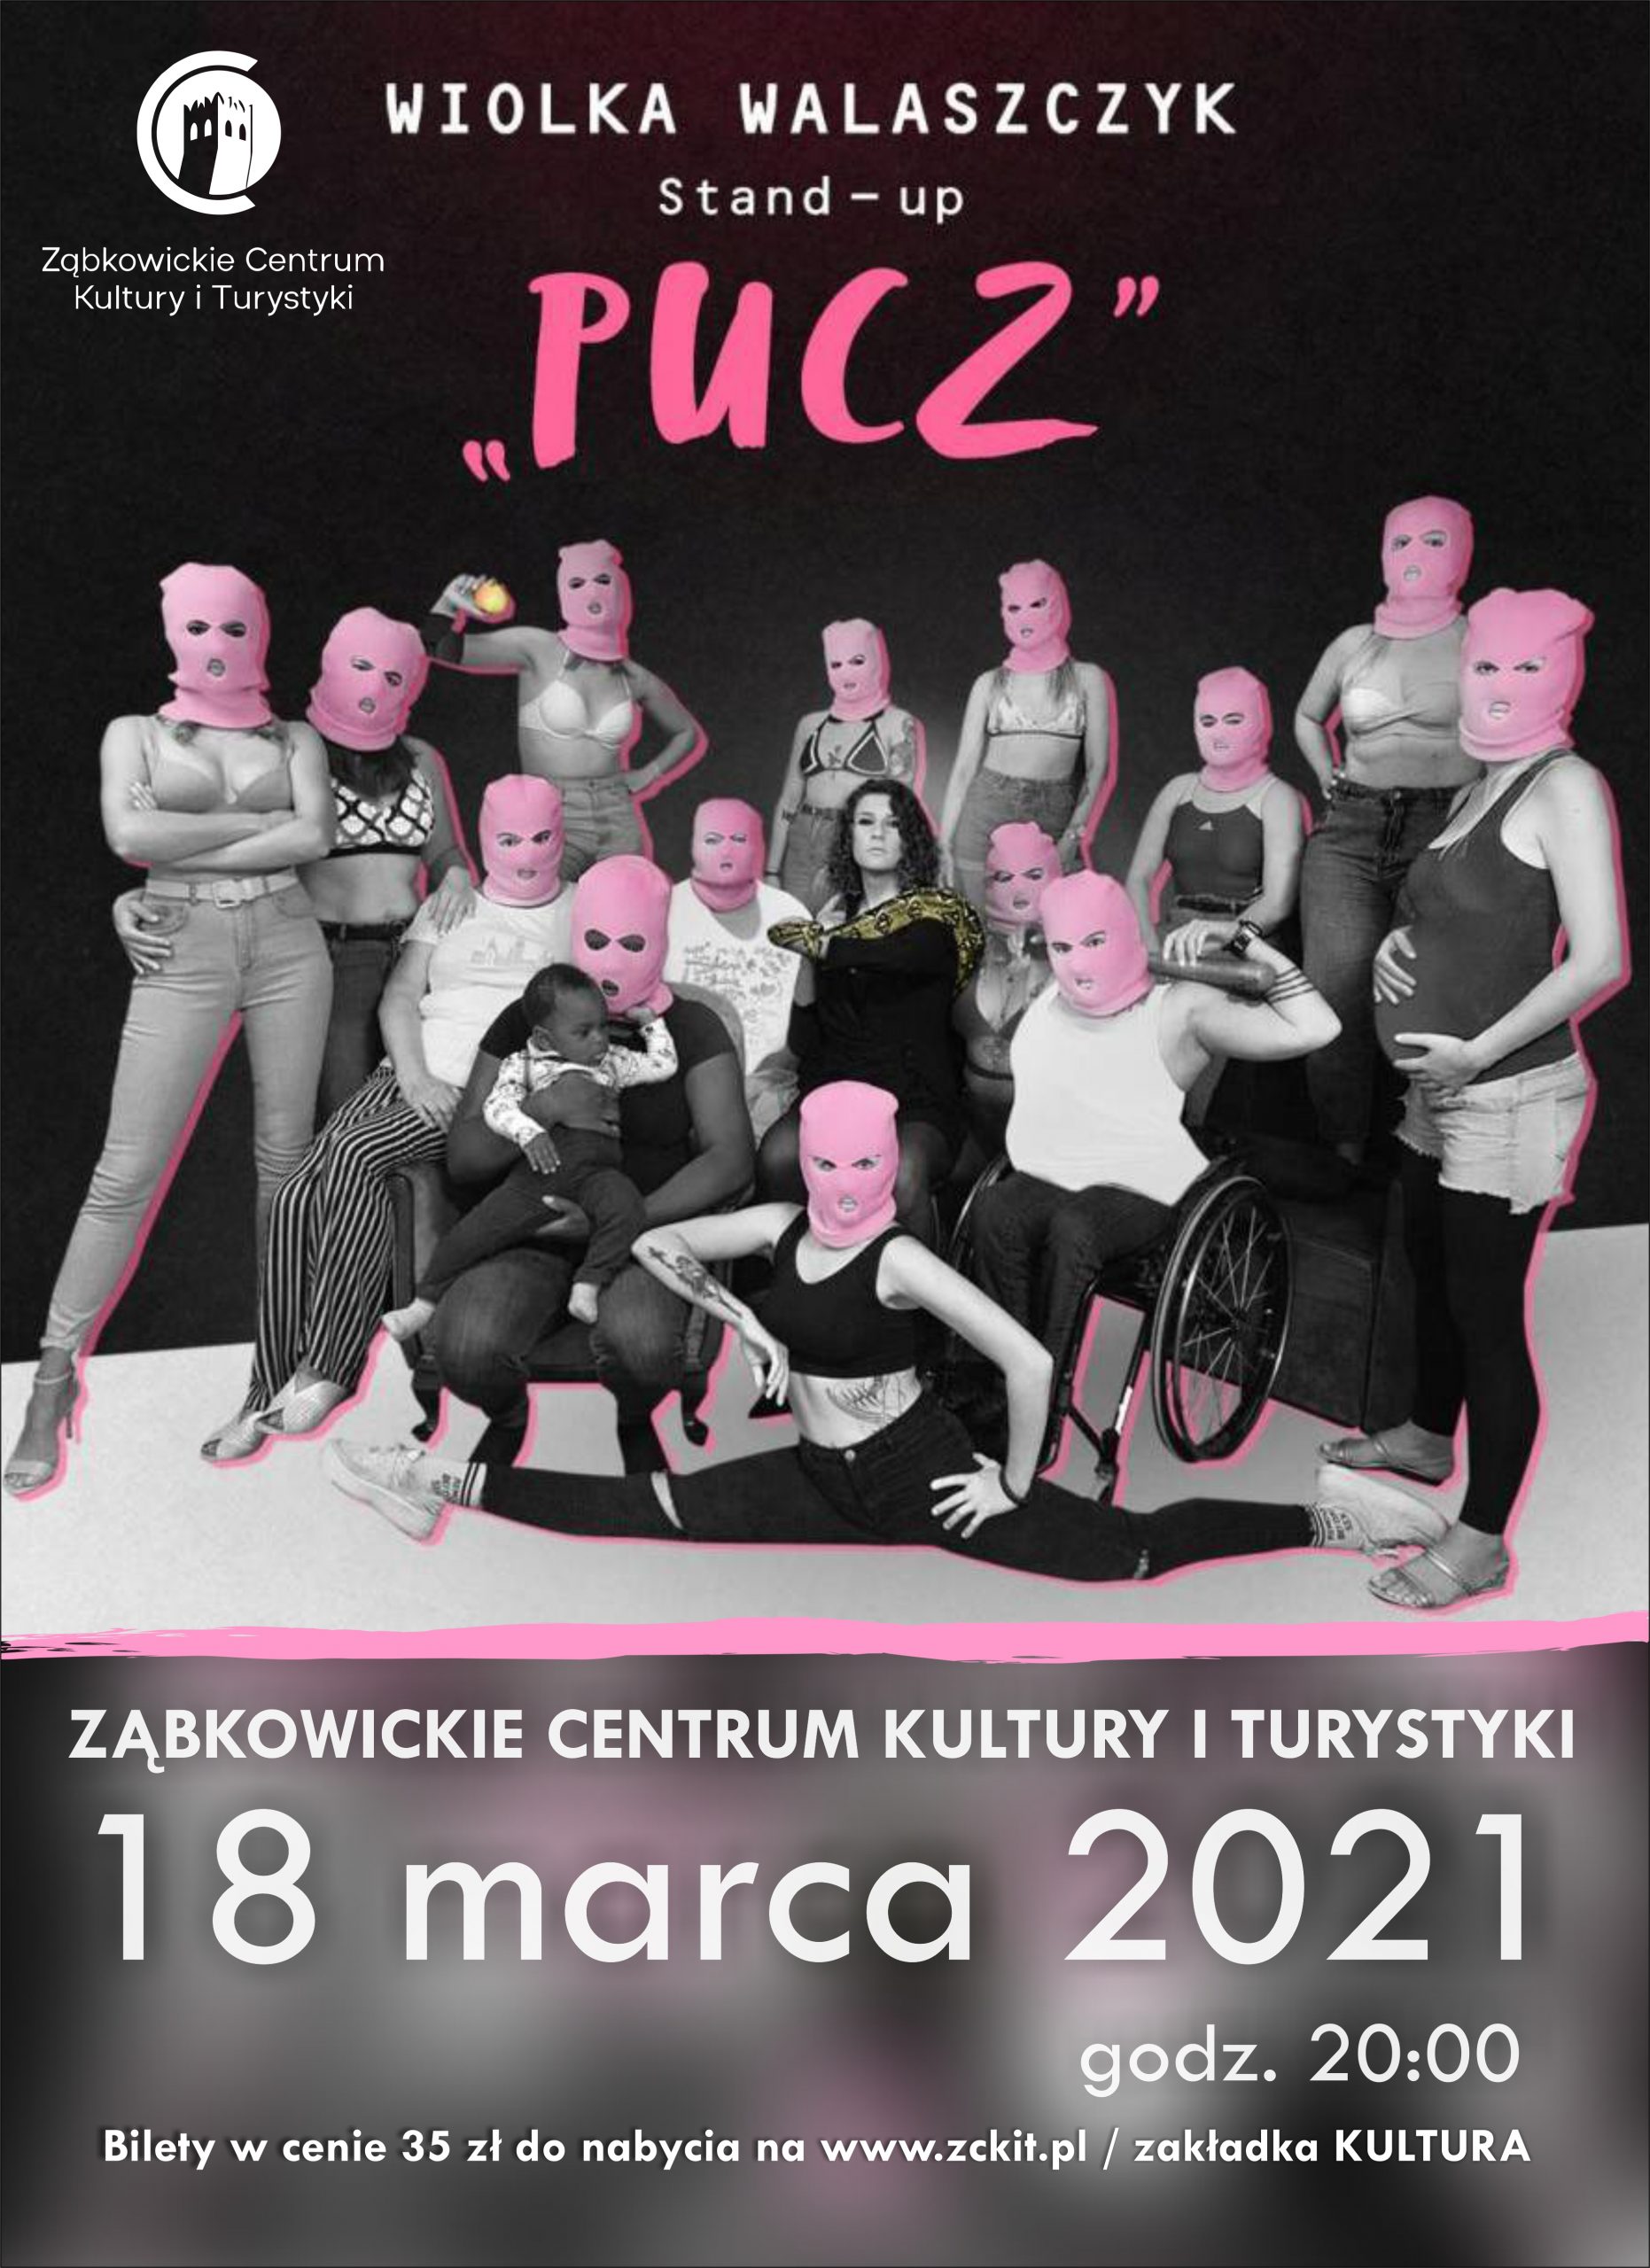 STAND UP WIOLKA WALASZCZYK ,,PUCZ" - 18 marca 2021 godzina 20:00 - Bilety w cenie 35ZŁ